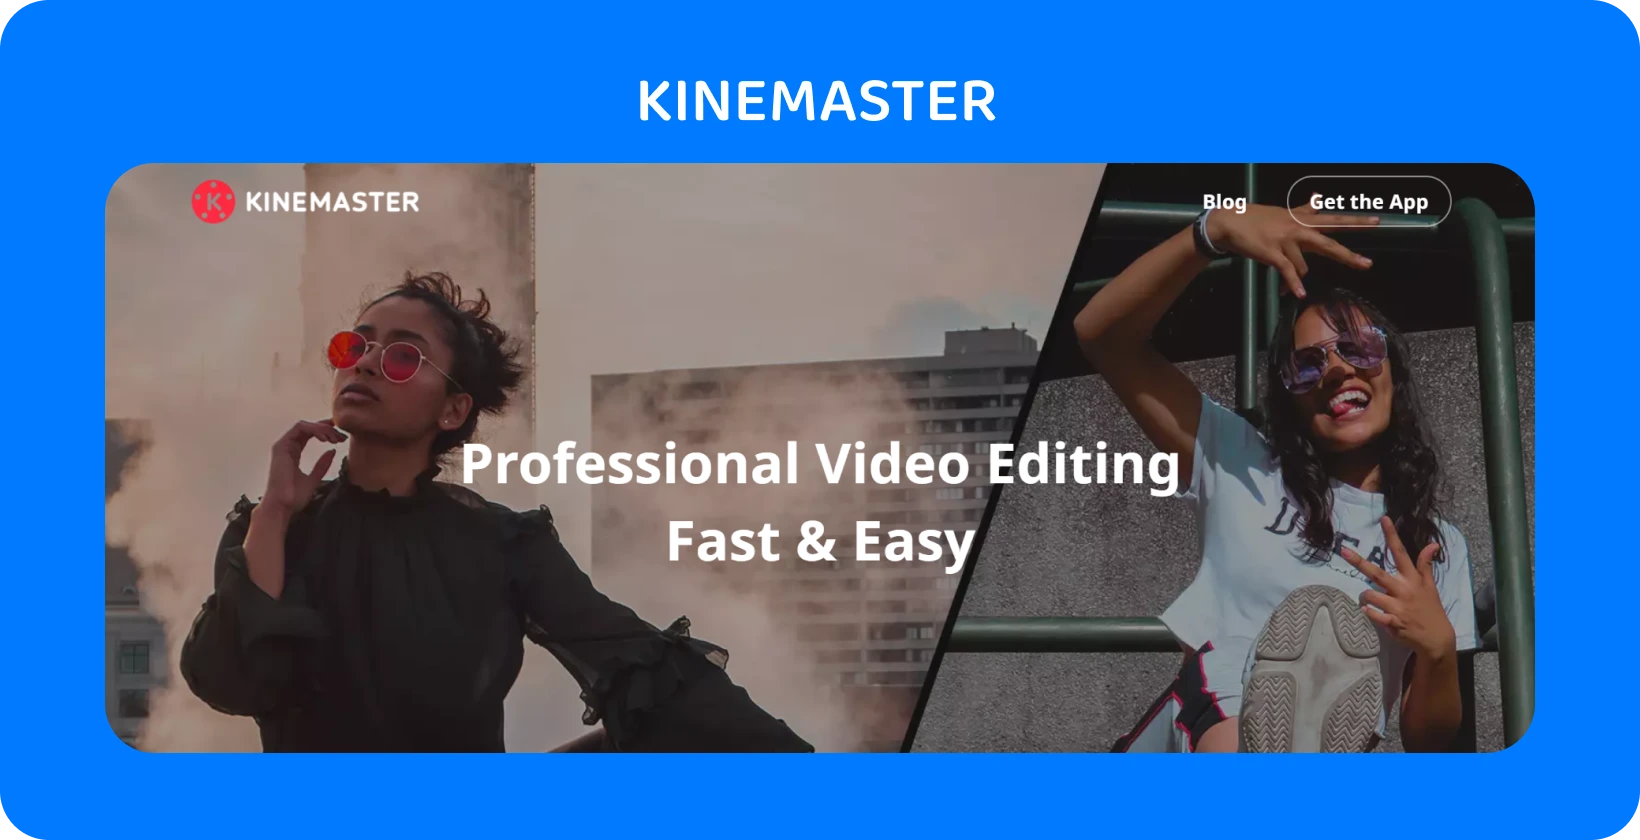 KineMaster App-Werbung mit zwei posierenden Modellen, die professionelle Videobearbeitung hervorheben, die schnell und einfach ist.